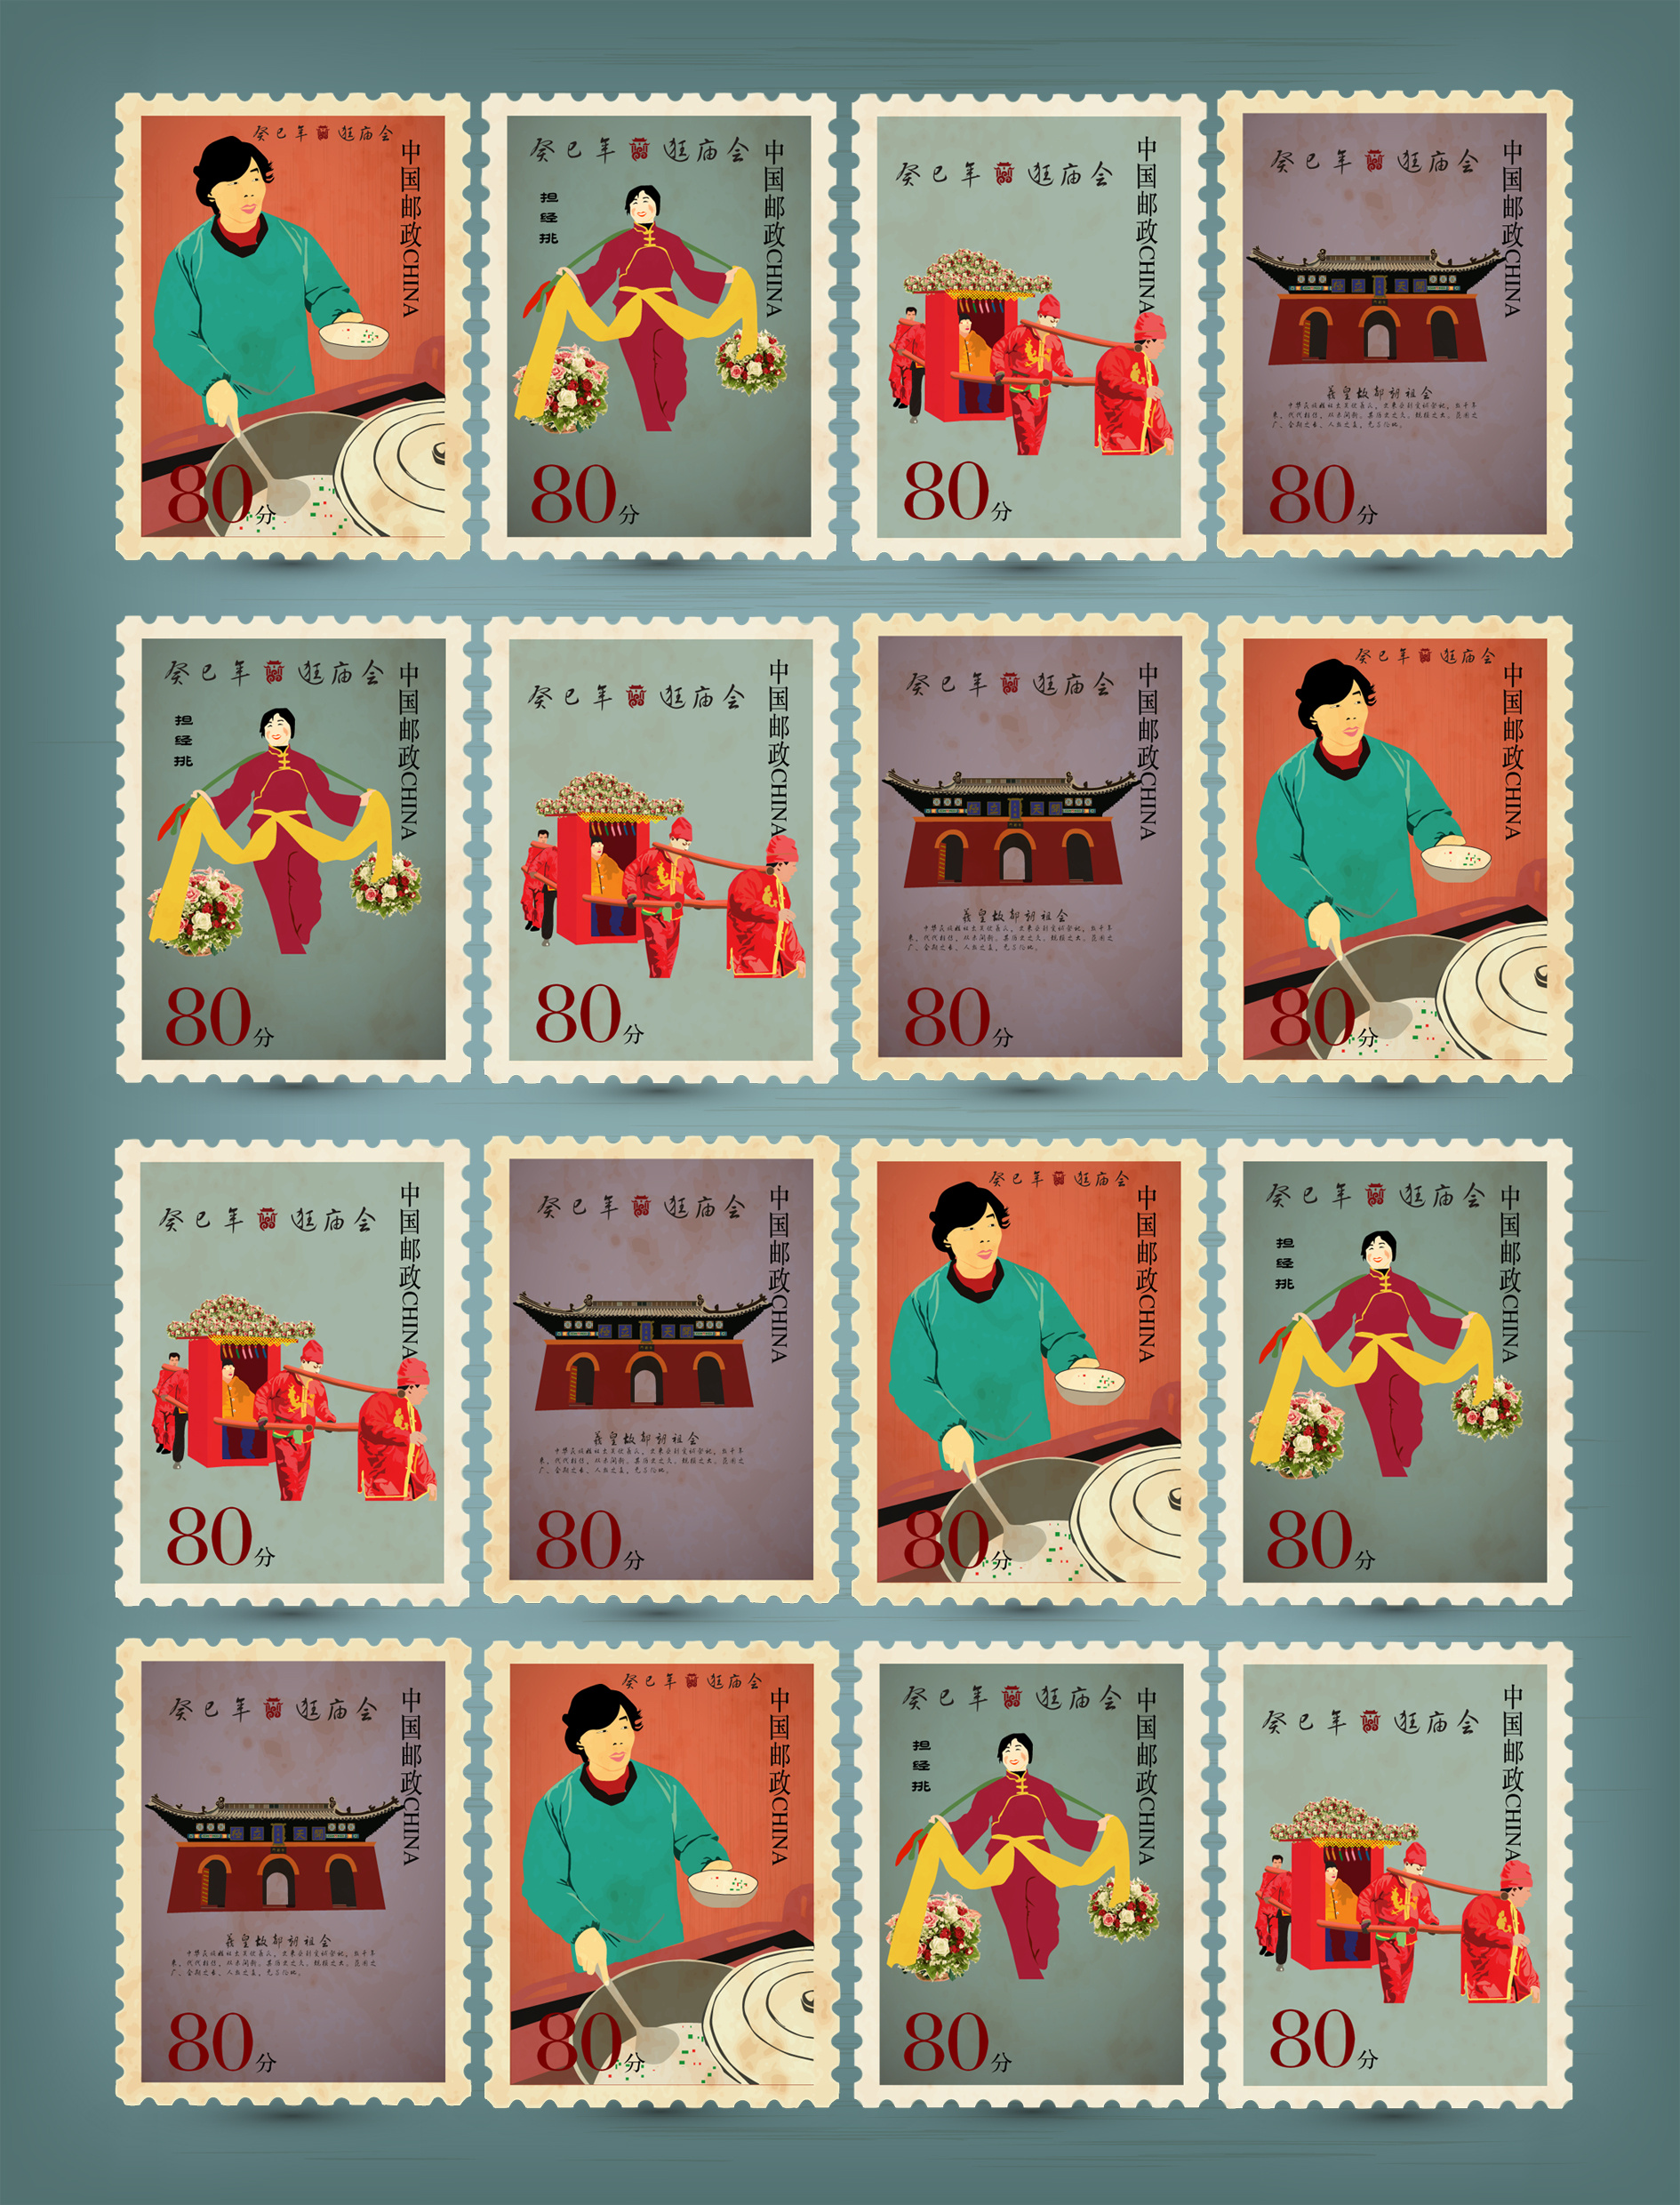 十二生肖卡通邮票——乙亥年 - 堆糖，美图壁纸兴趣社区